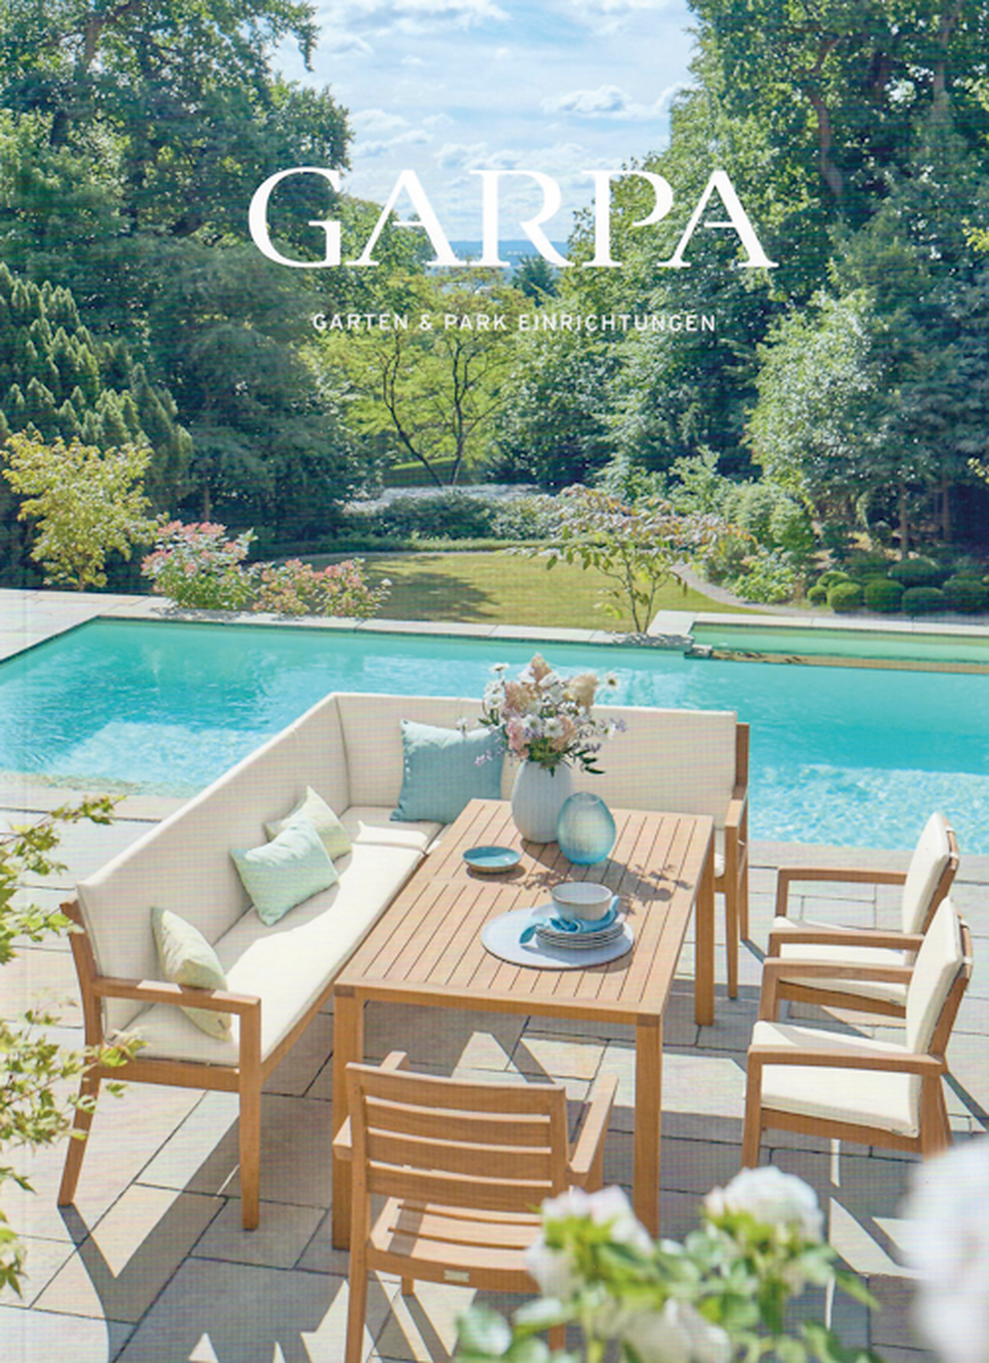 Bereits das Cover des Garpa-Katalogs ld zum Trumen ein. (Bild: Quelle: Garpa Garten & Park Einrichtungen GmbH, Scan: Michael Jansen)